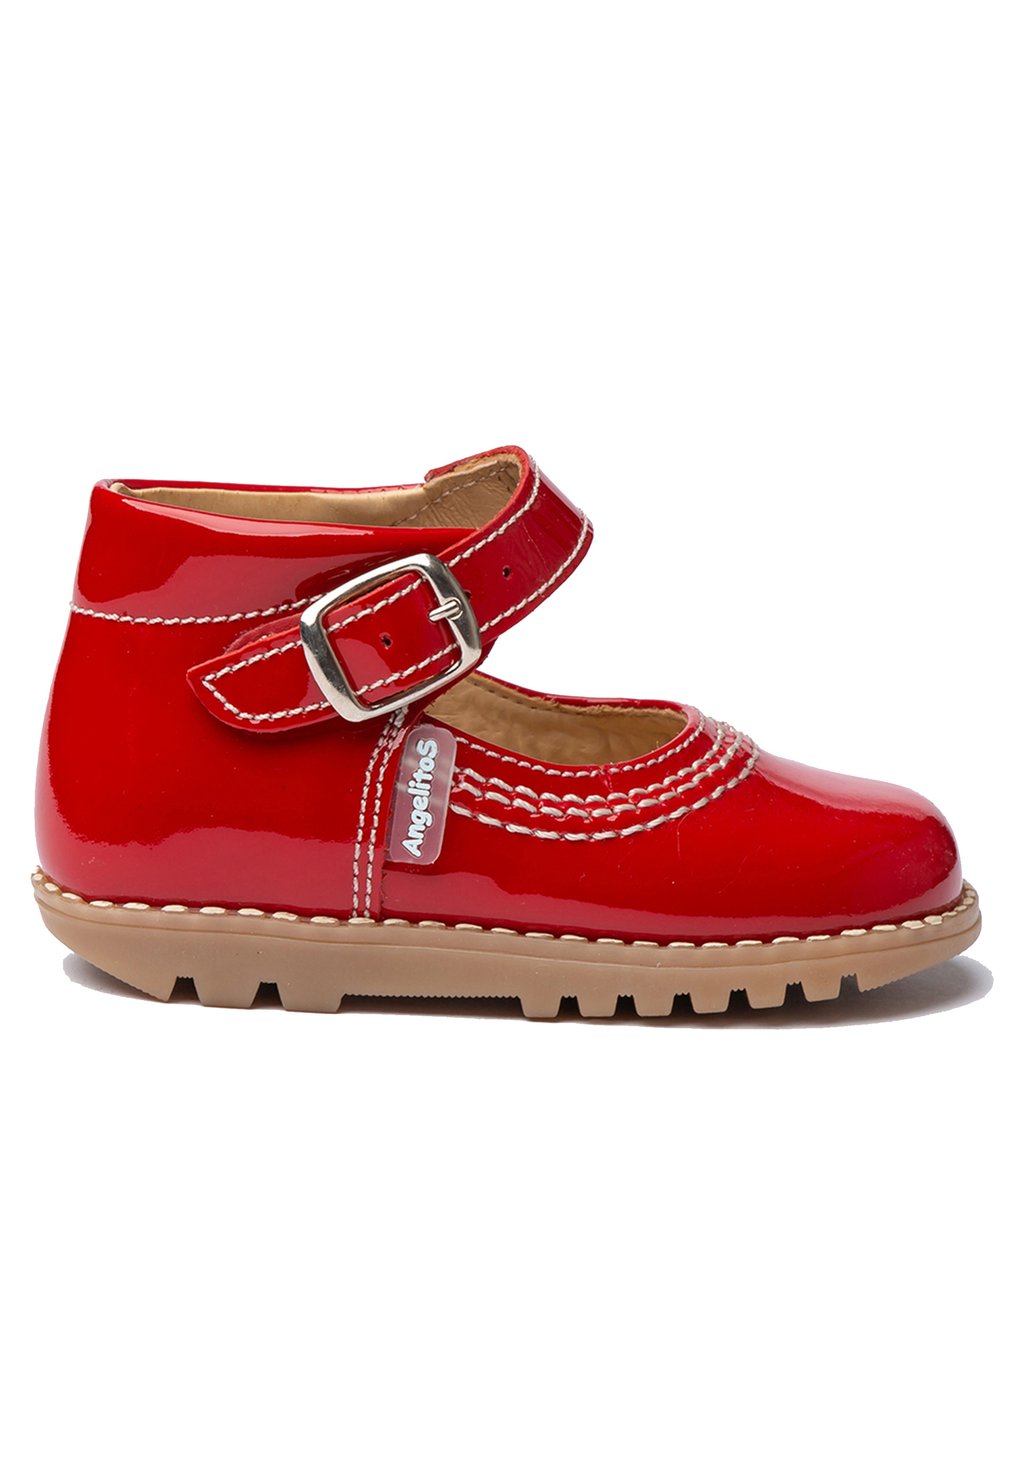 Детская обувь PEPITO UNISEX Calzados Angelitos, красный